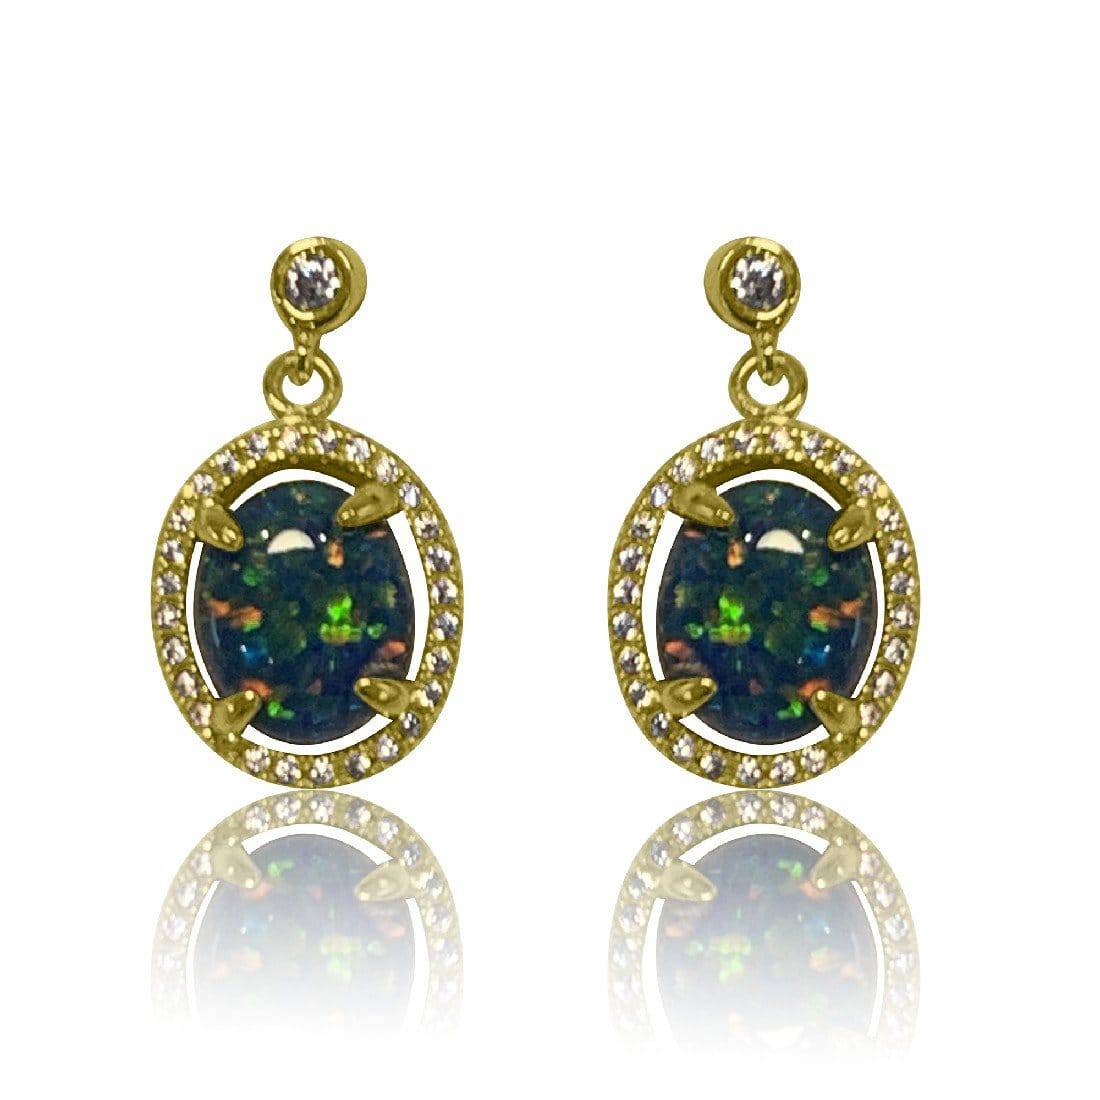 Silver Gold Plated Opal Triplet earrings - Masterpiece Jewellery Opal & Gems Sydney Australia | Online Shop